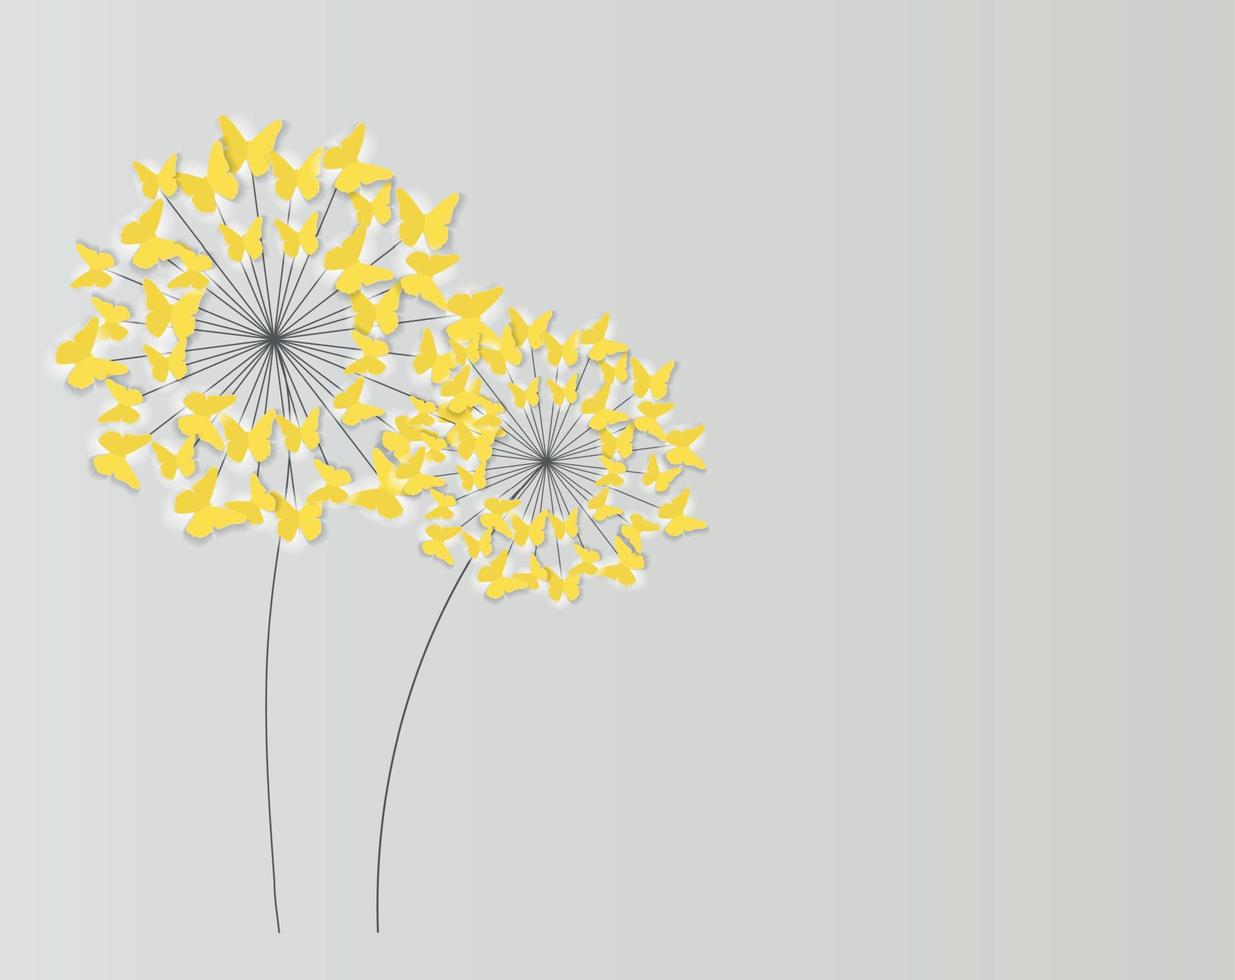 abstrakt papper klippa ut fjäril blomma bakgrund. vektor illustration